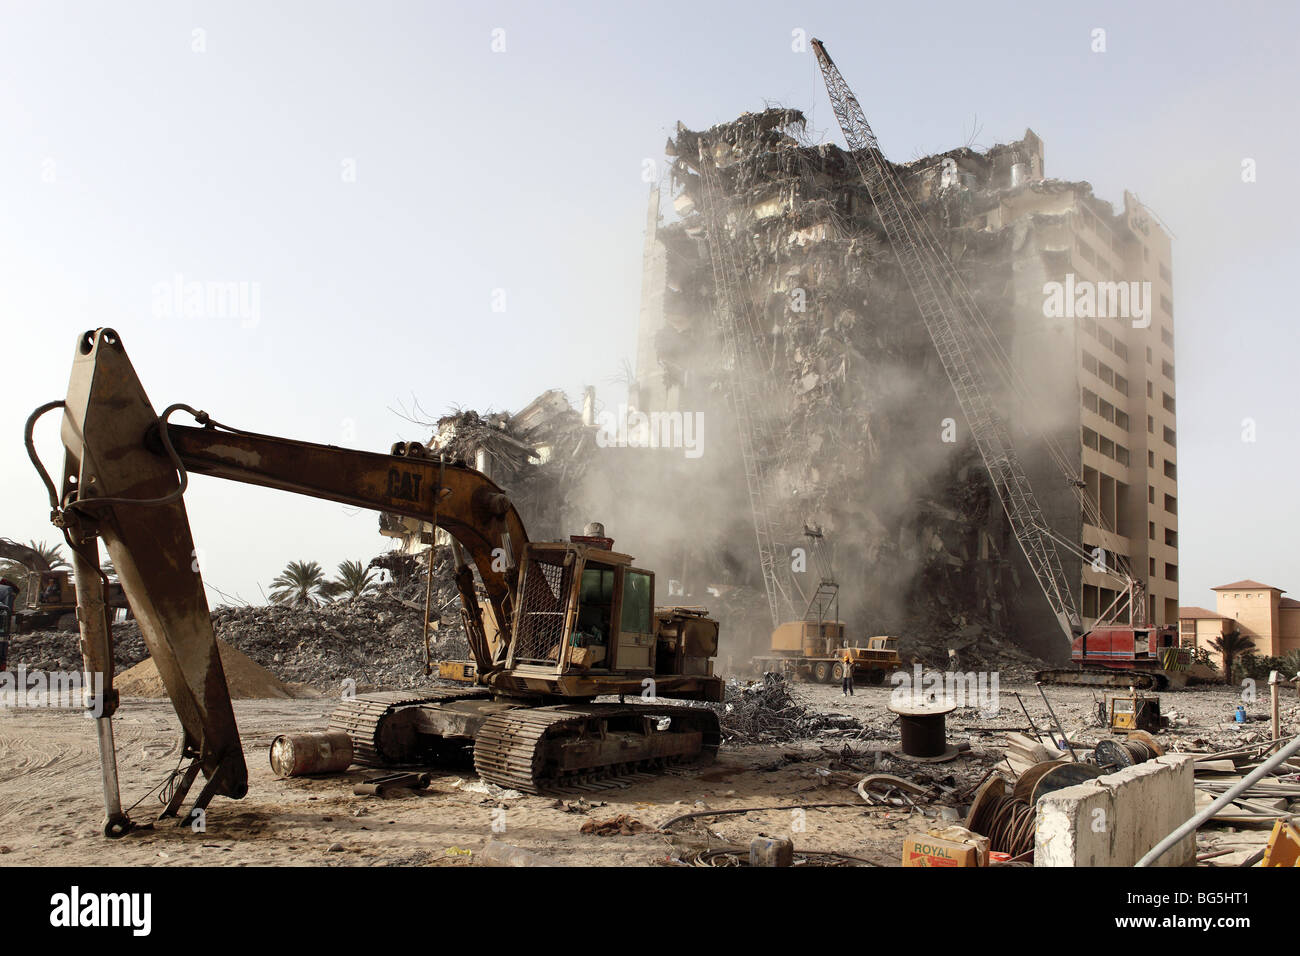 Demolition works, Dubai, United Arab Emirates Stock Photo